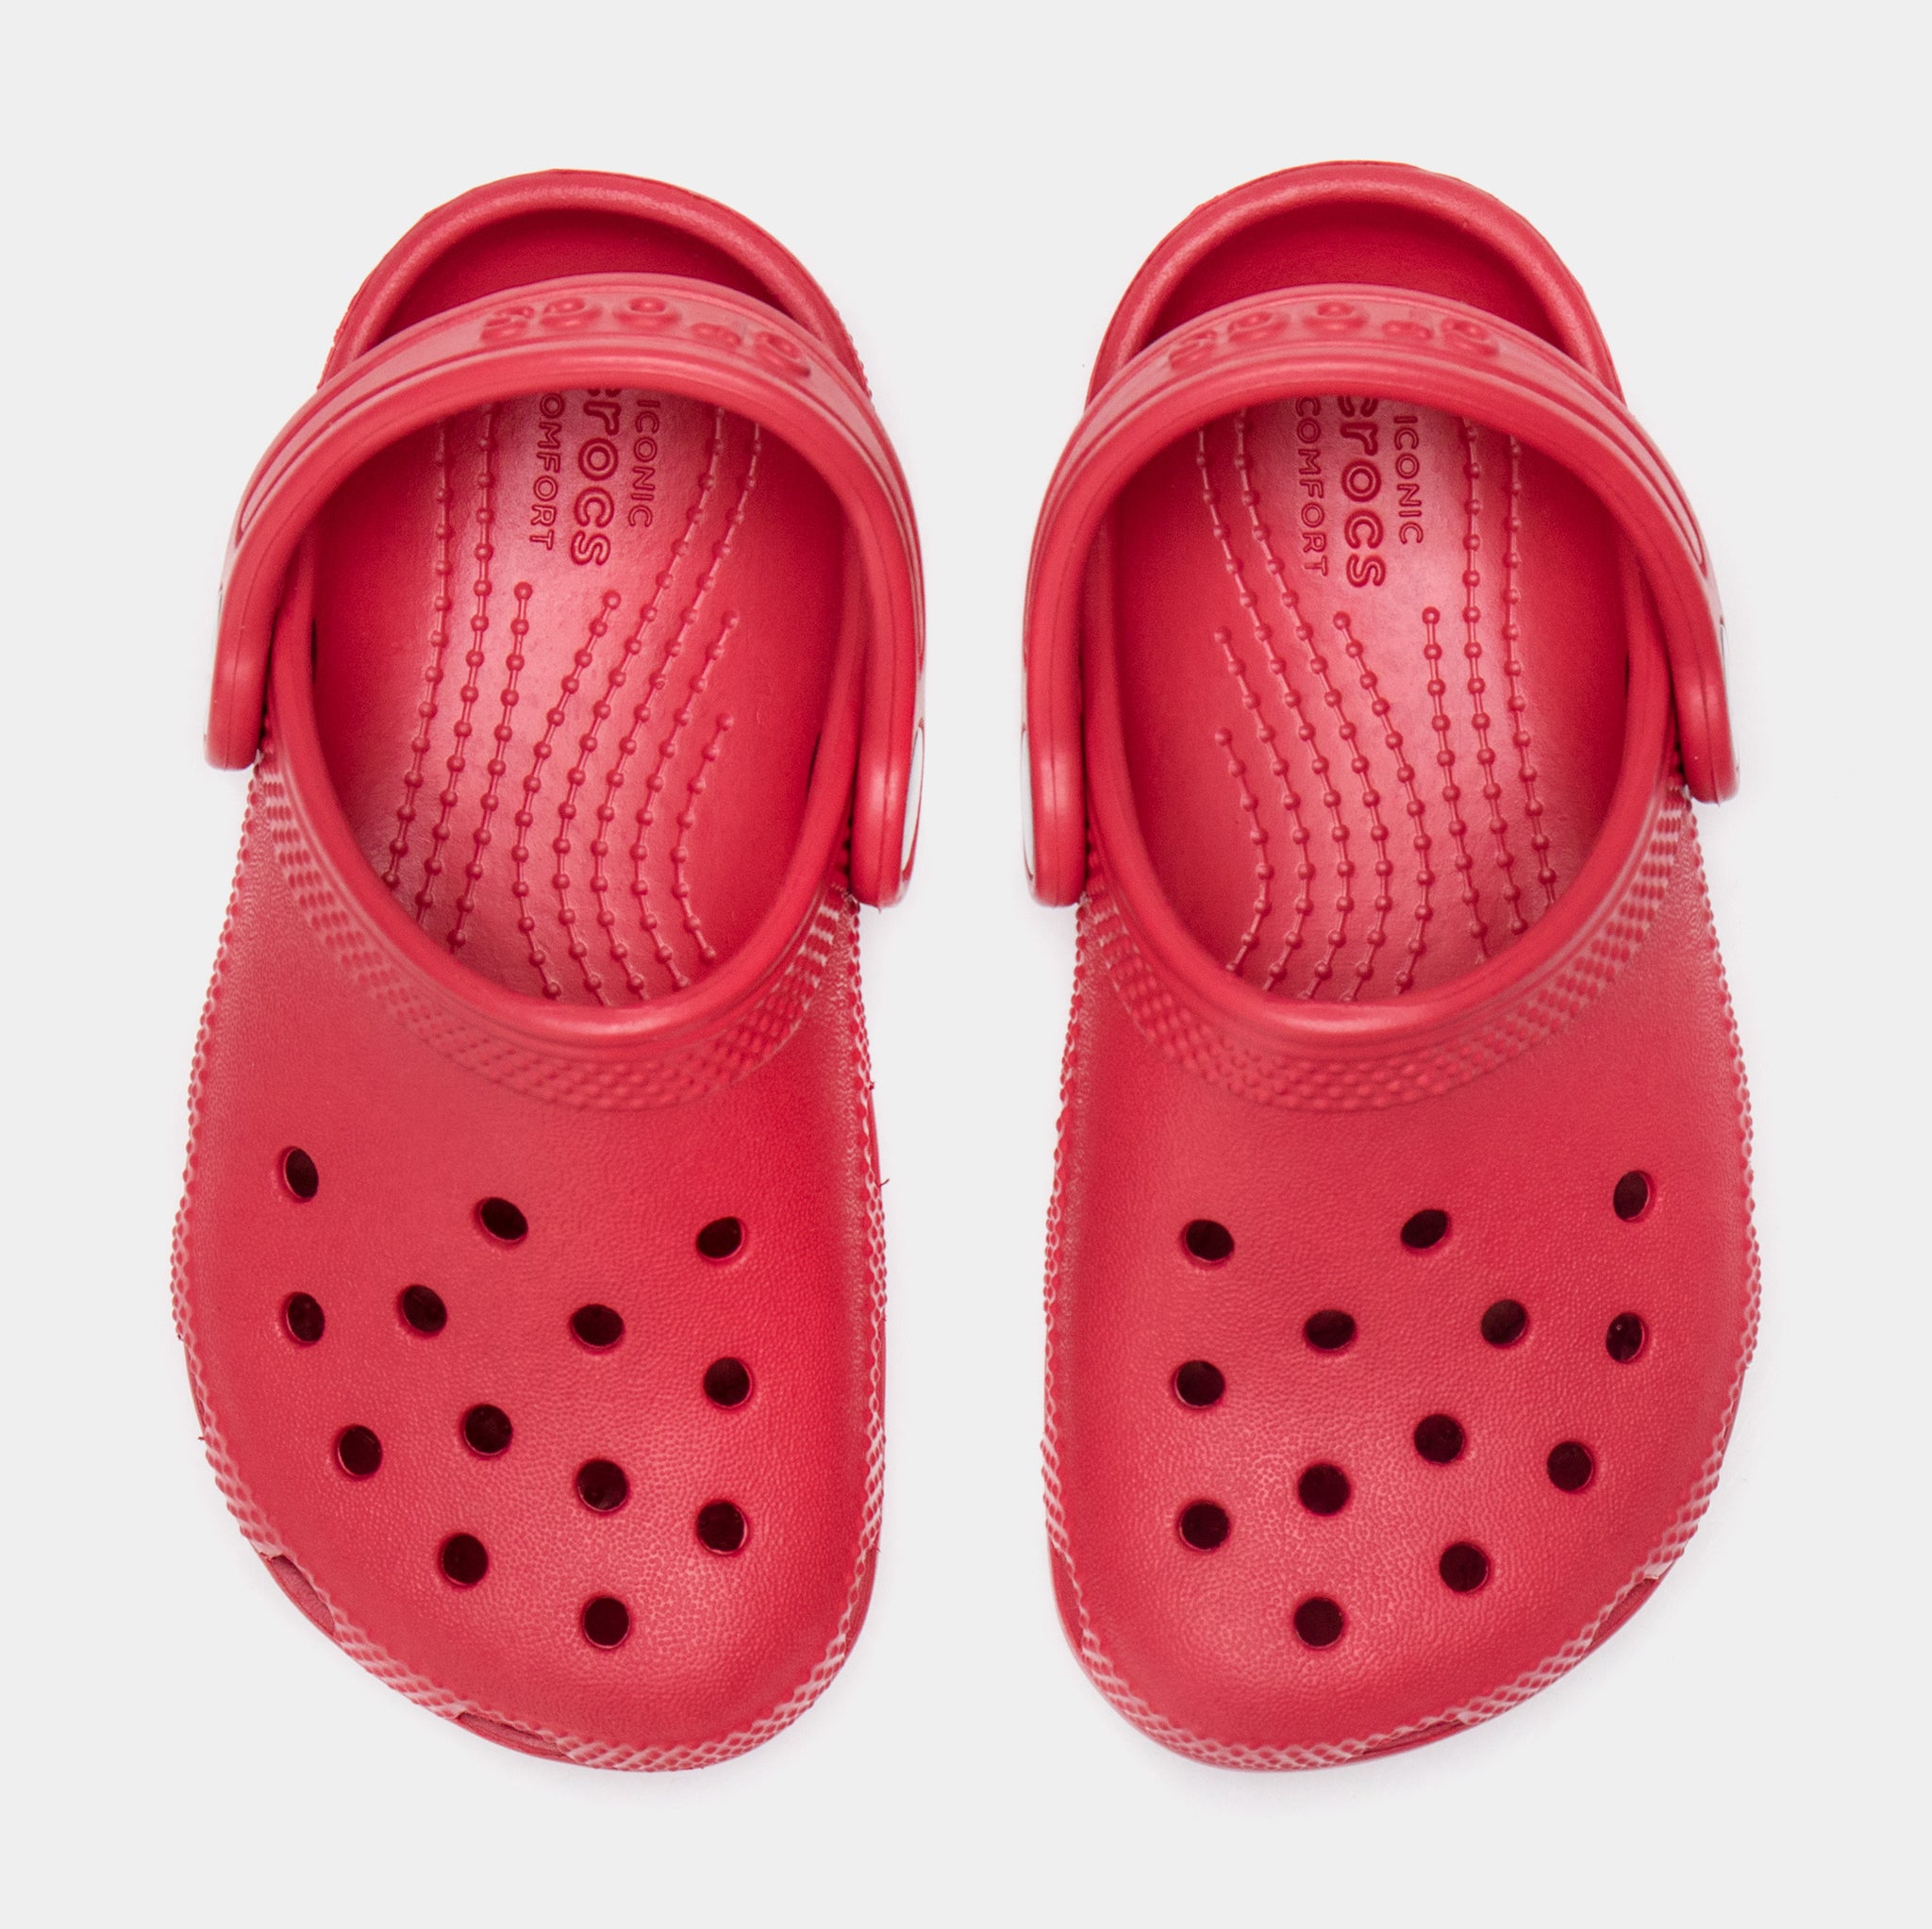 INFANT CROCS LITTLES CLOG | Crocs, Crocs size, Clogs